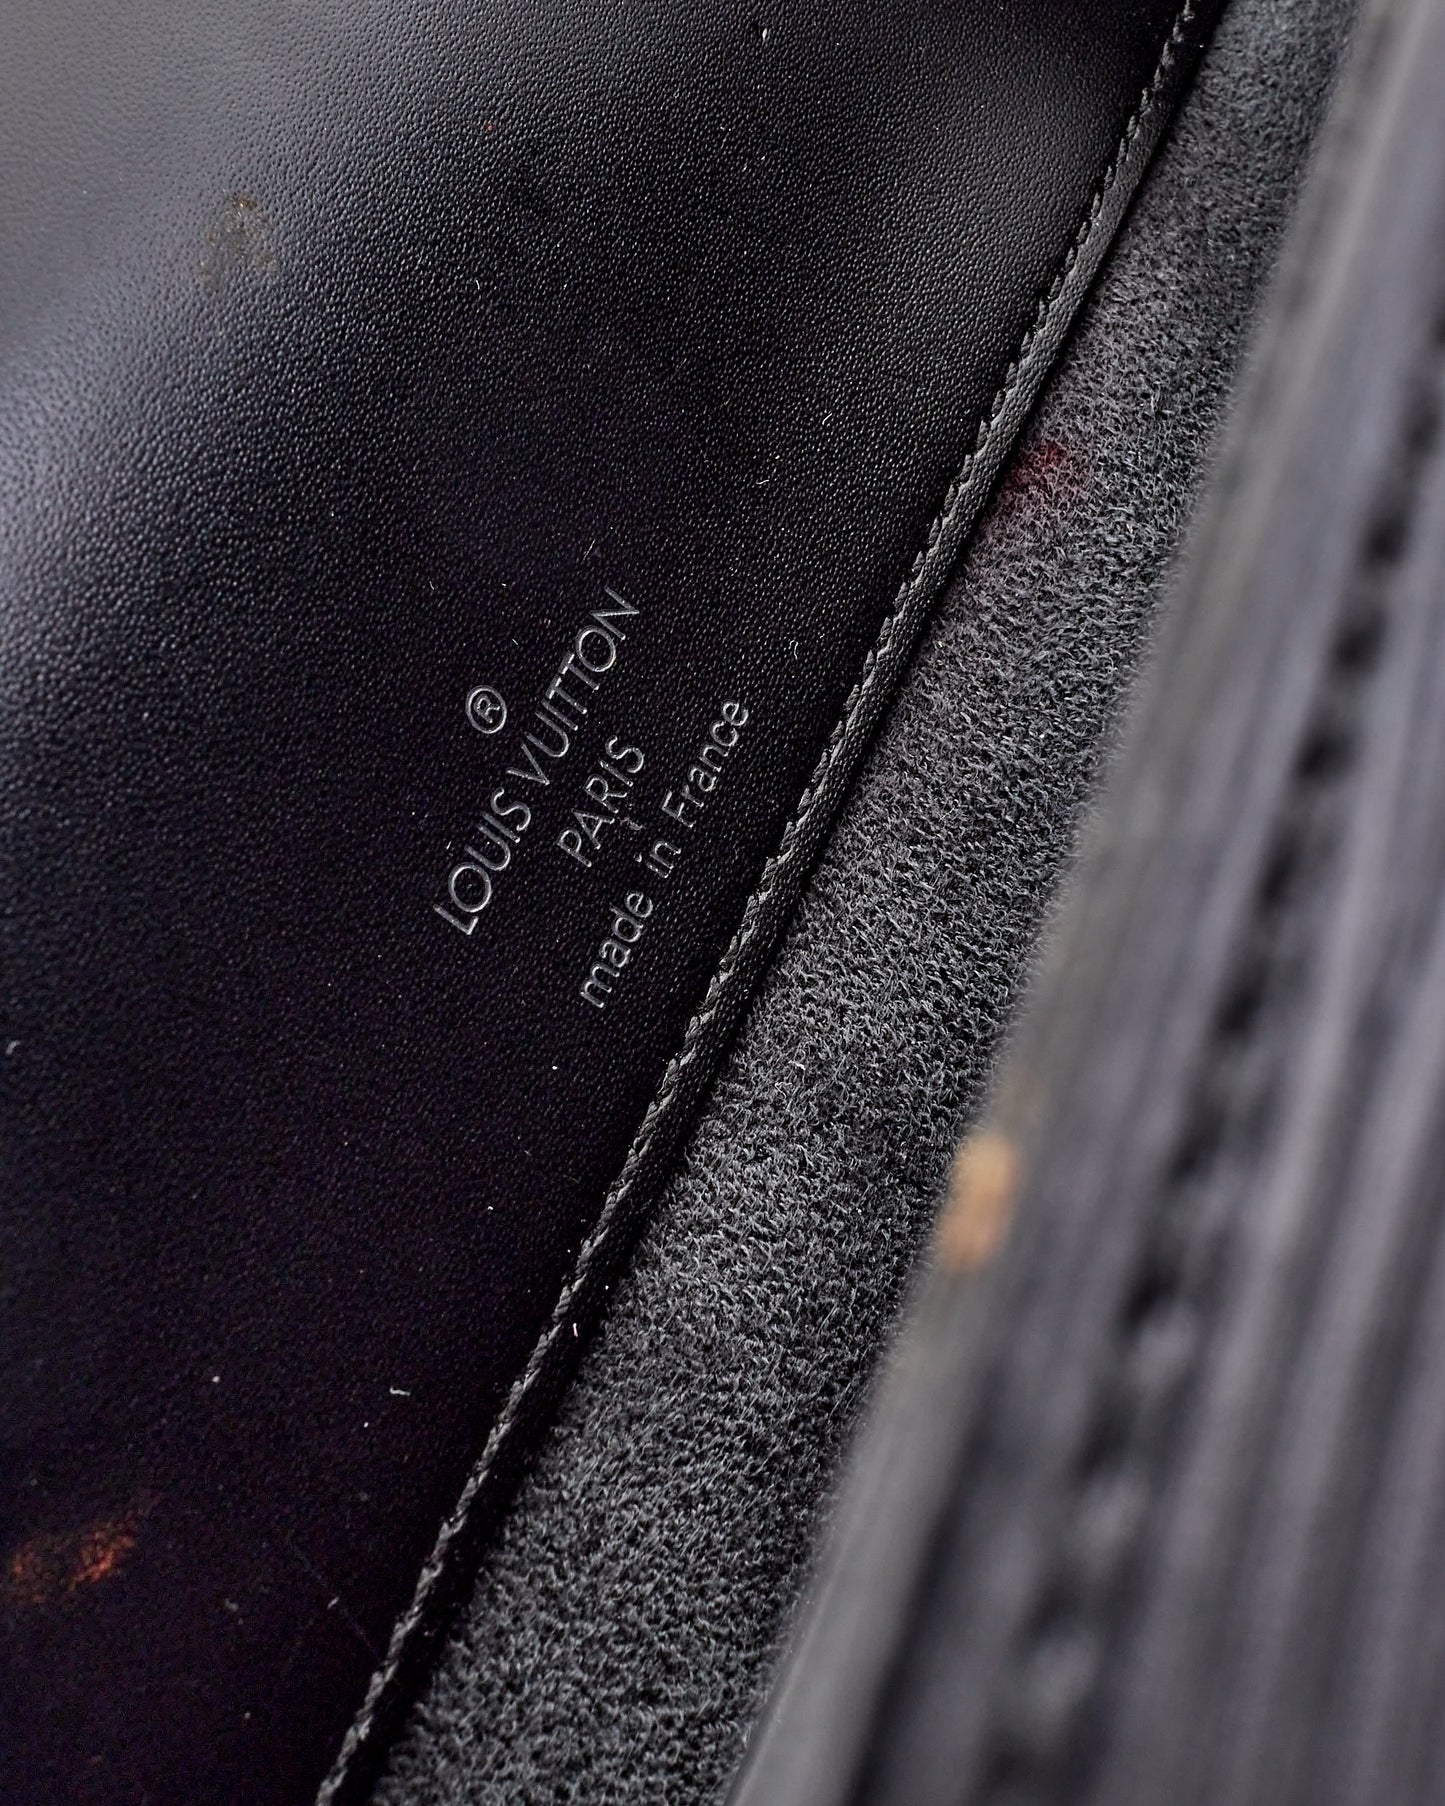 Louis Vuitton Black Epi Leather Nocturne PM Shoulder Bag